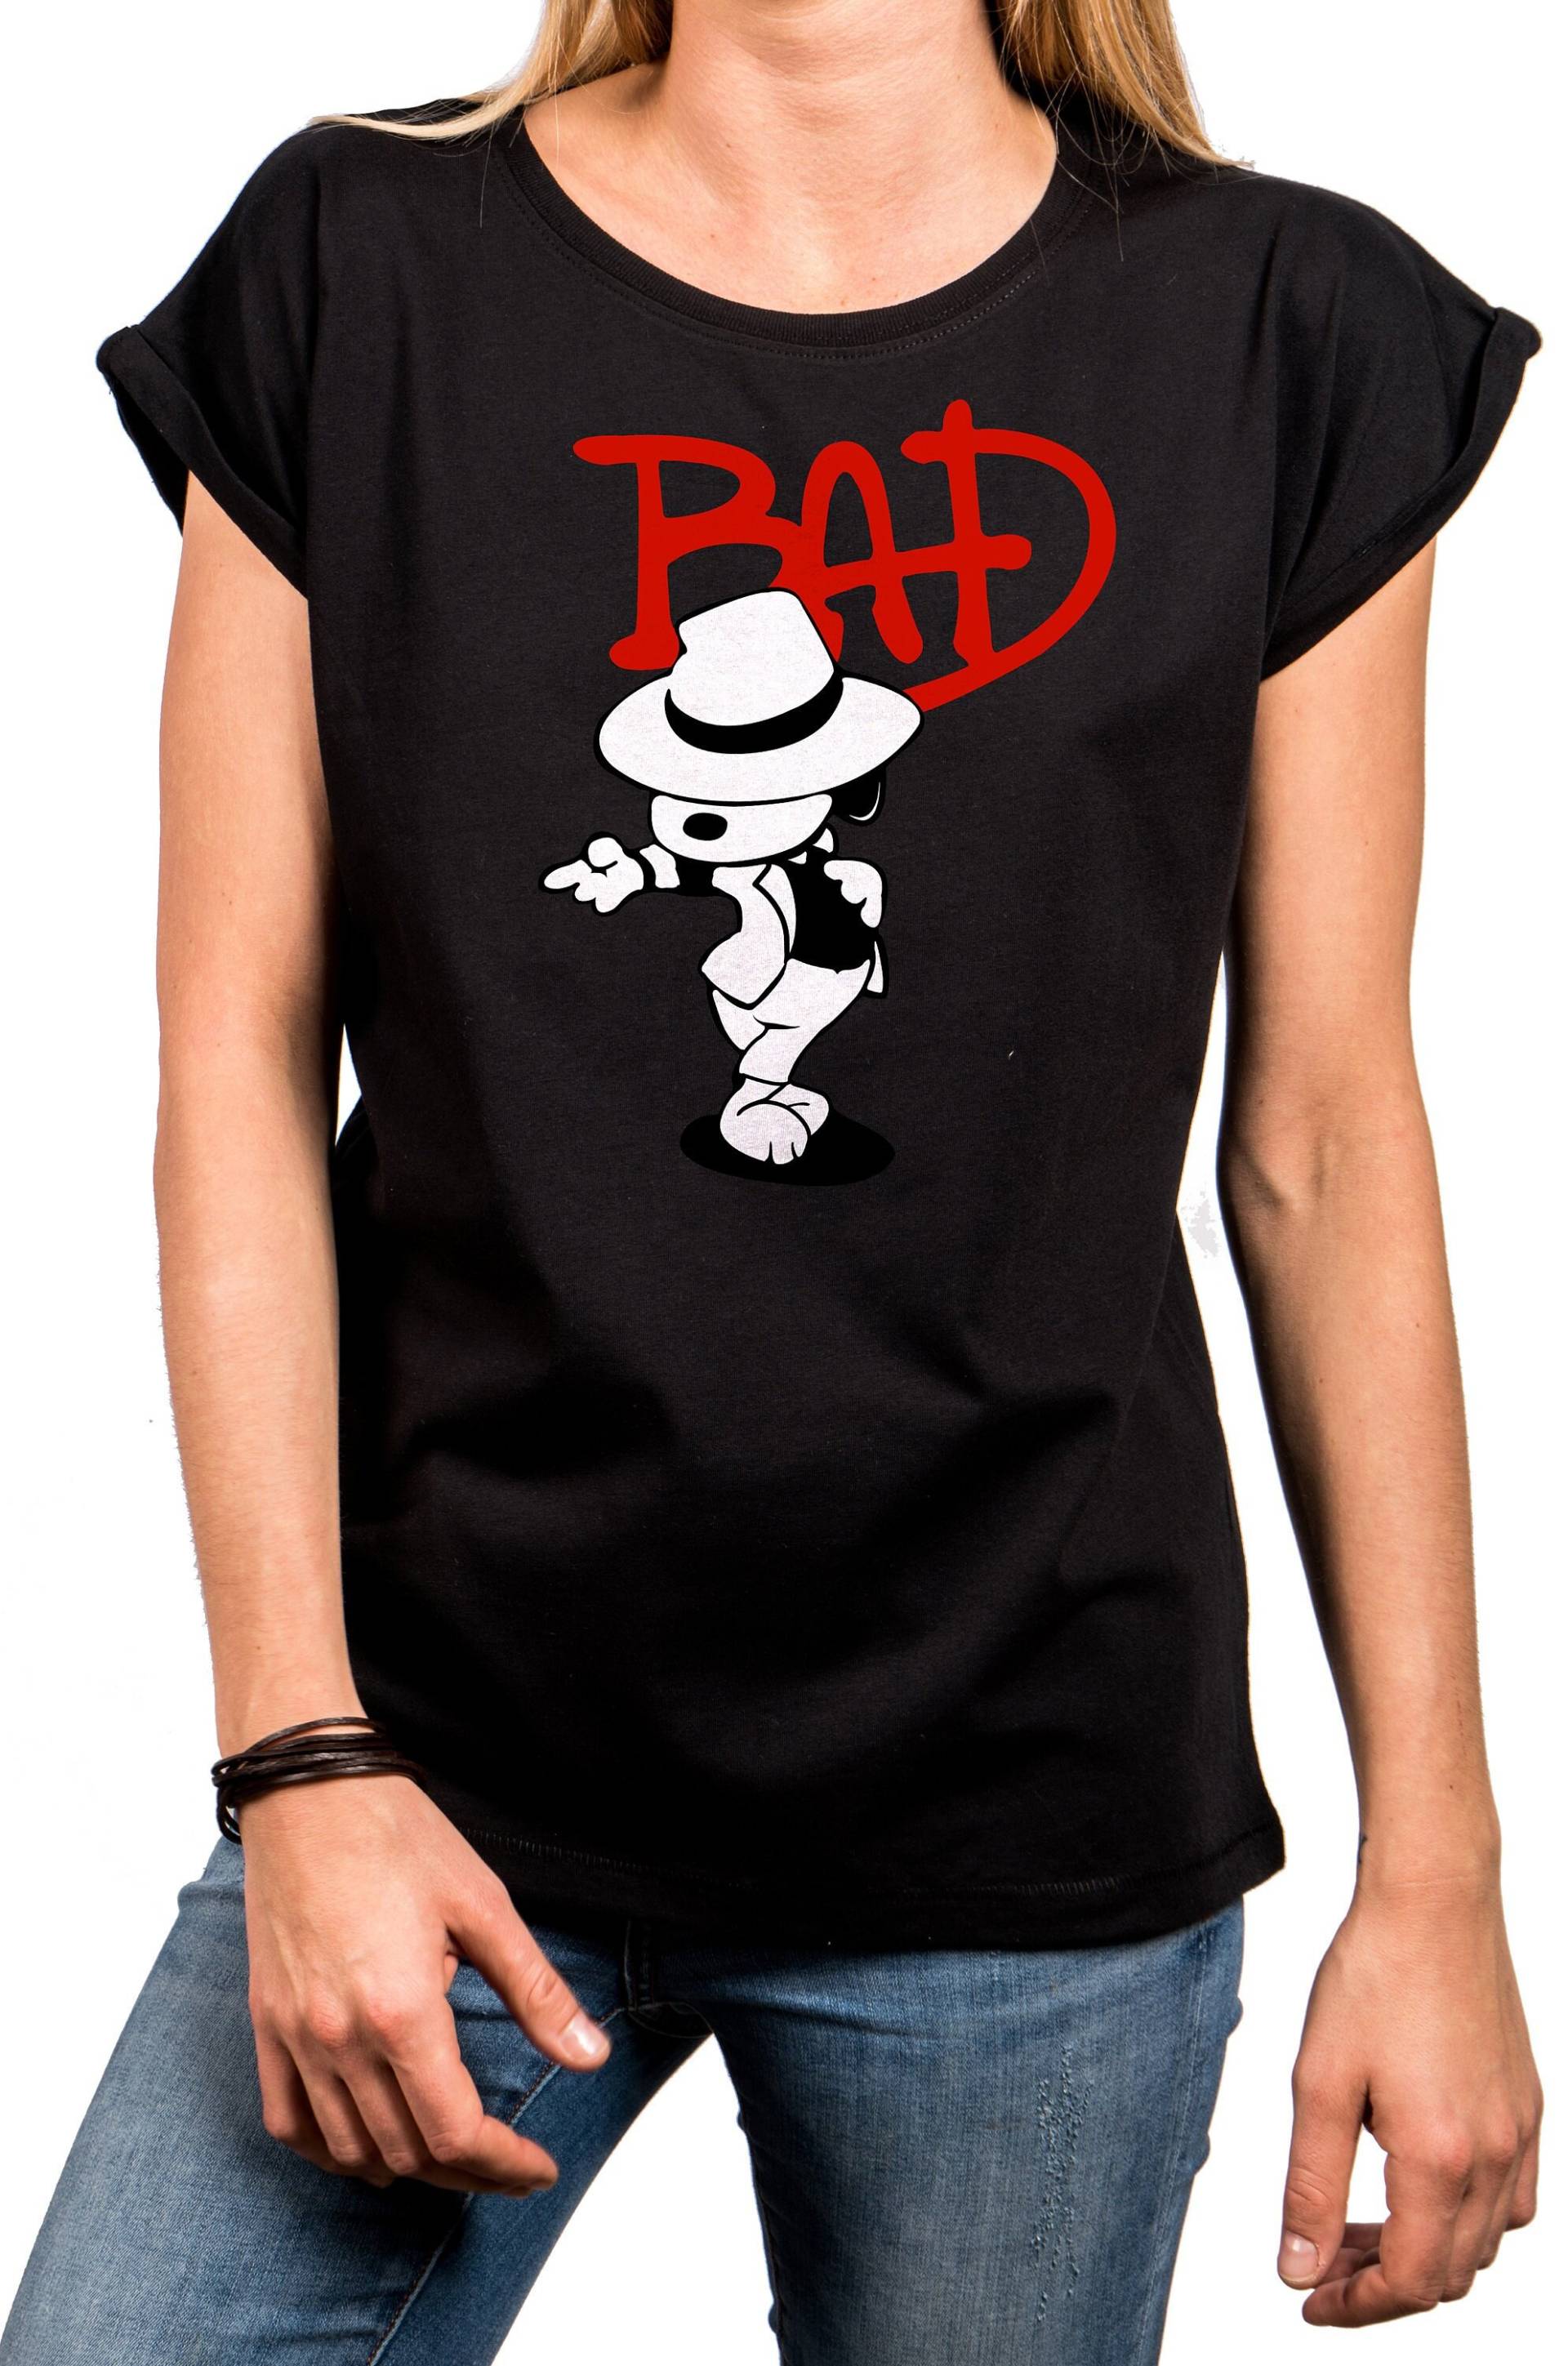 Lustiges Damen T-Shirt Mit Aufdruck, Hund Hut, Bad Dog Jackson, Locker Geschnitten, Schwarz, Gr. Xs Bis 5Xl von MakayaShirts